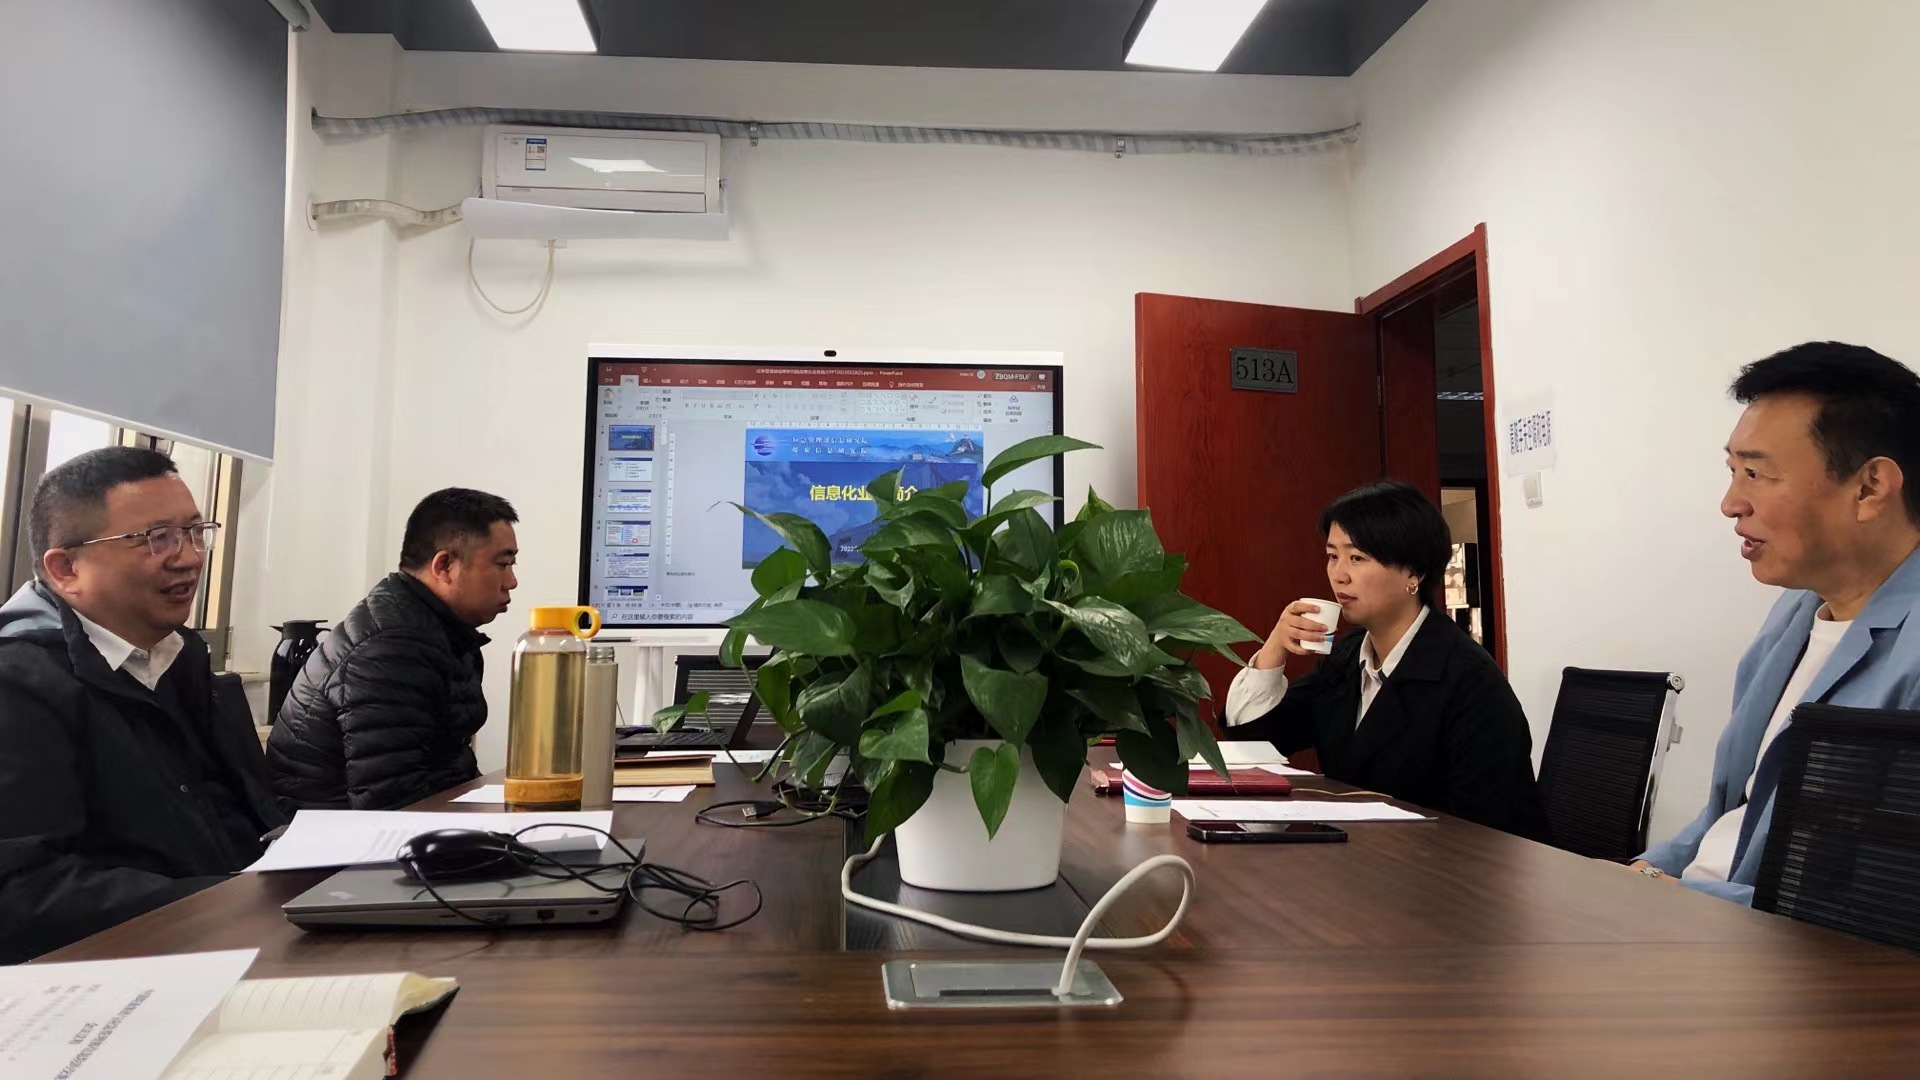 中国联通集团首席科学家范济安到公司座谈交流